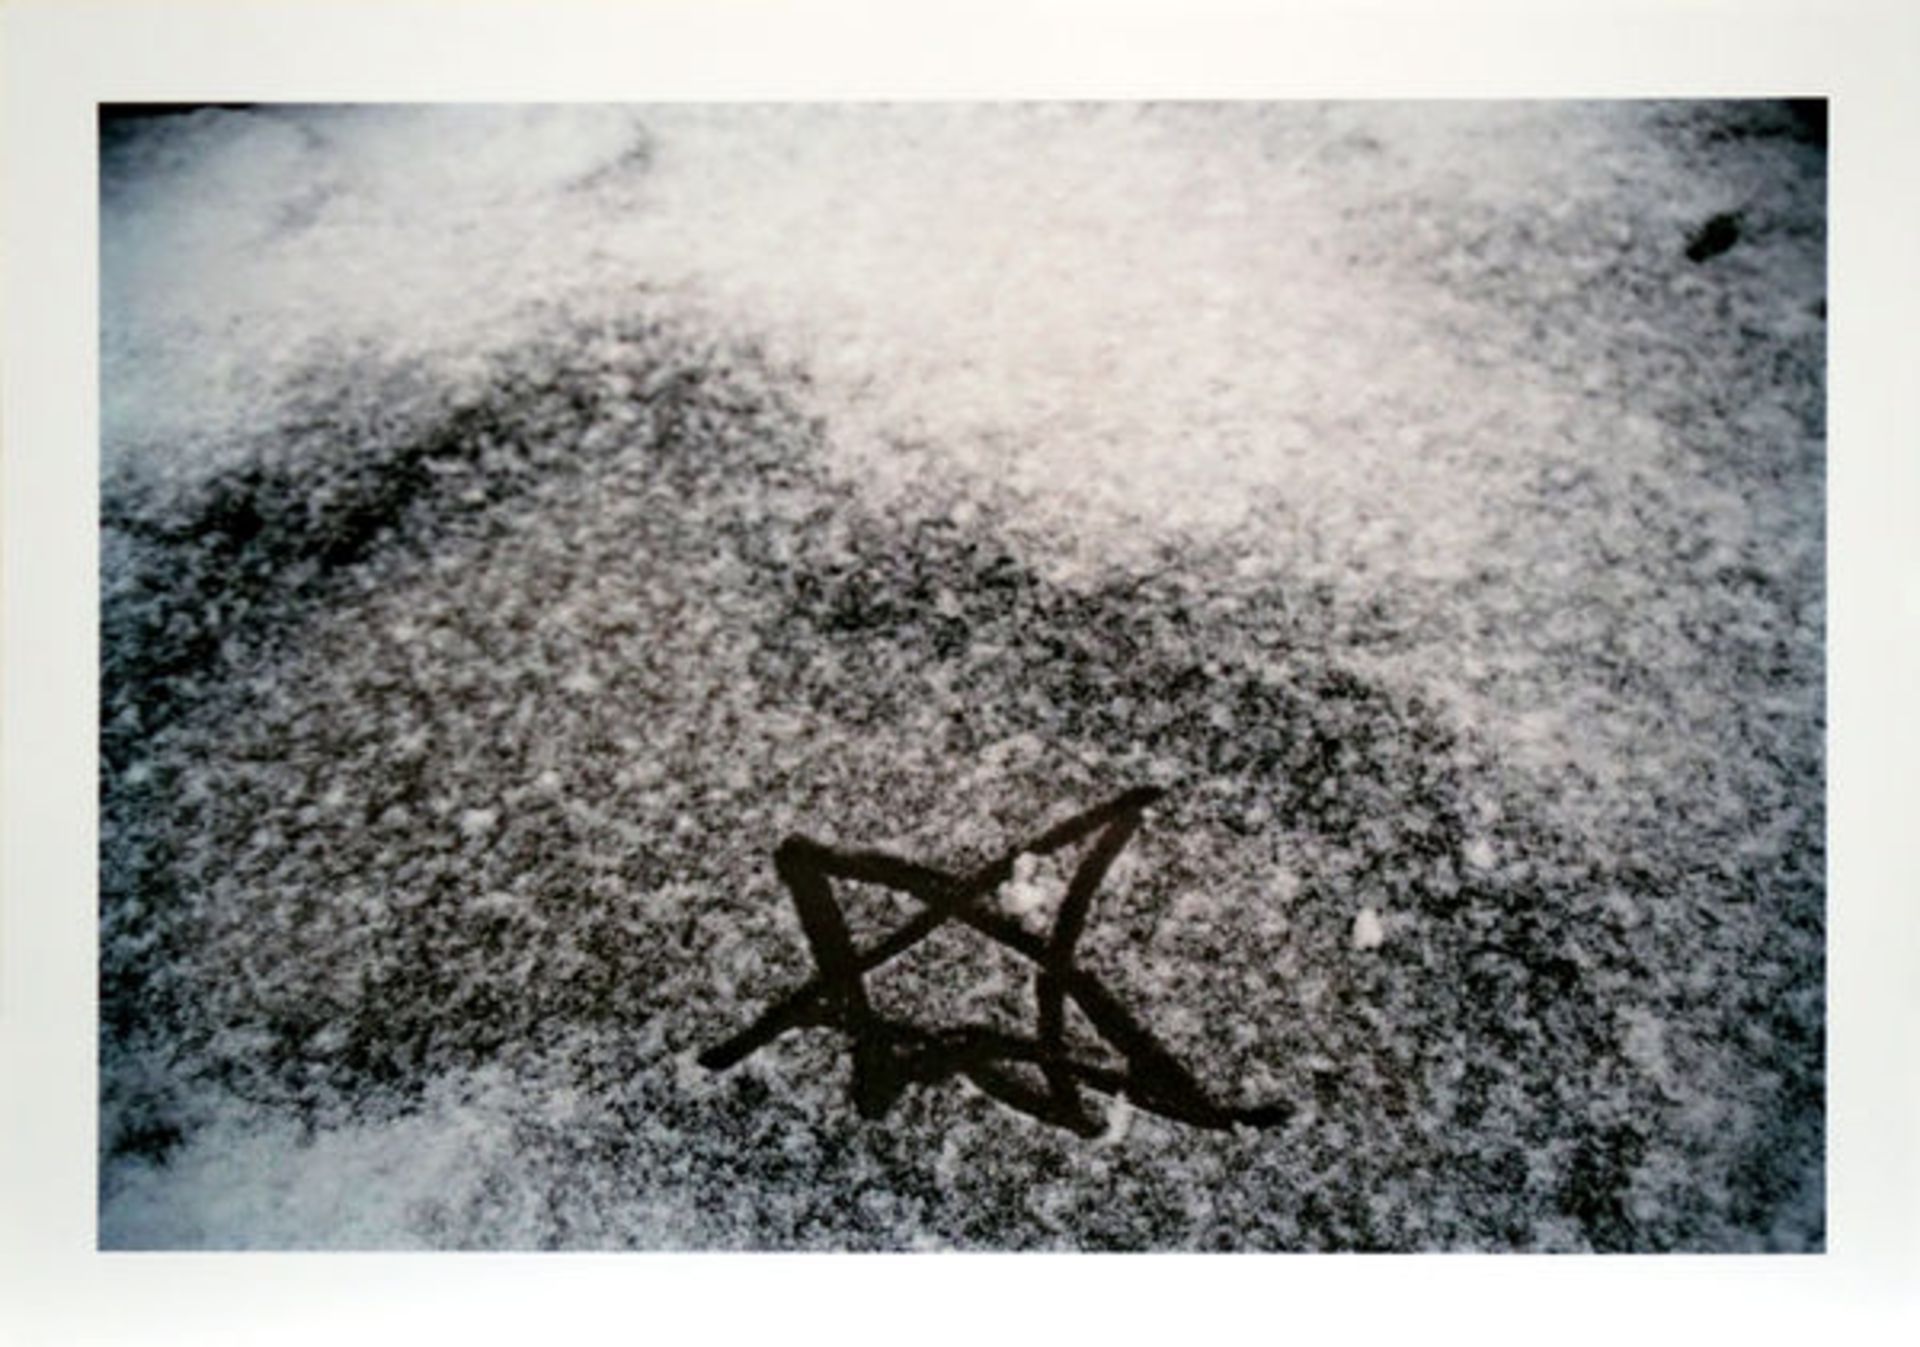 Dahn, WalterFarbphotographie auf Photopapier, 28,1 x 40 cmKleiner Stern im Schnee (2002)Verso